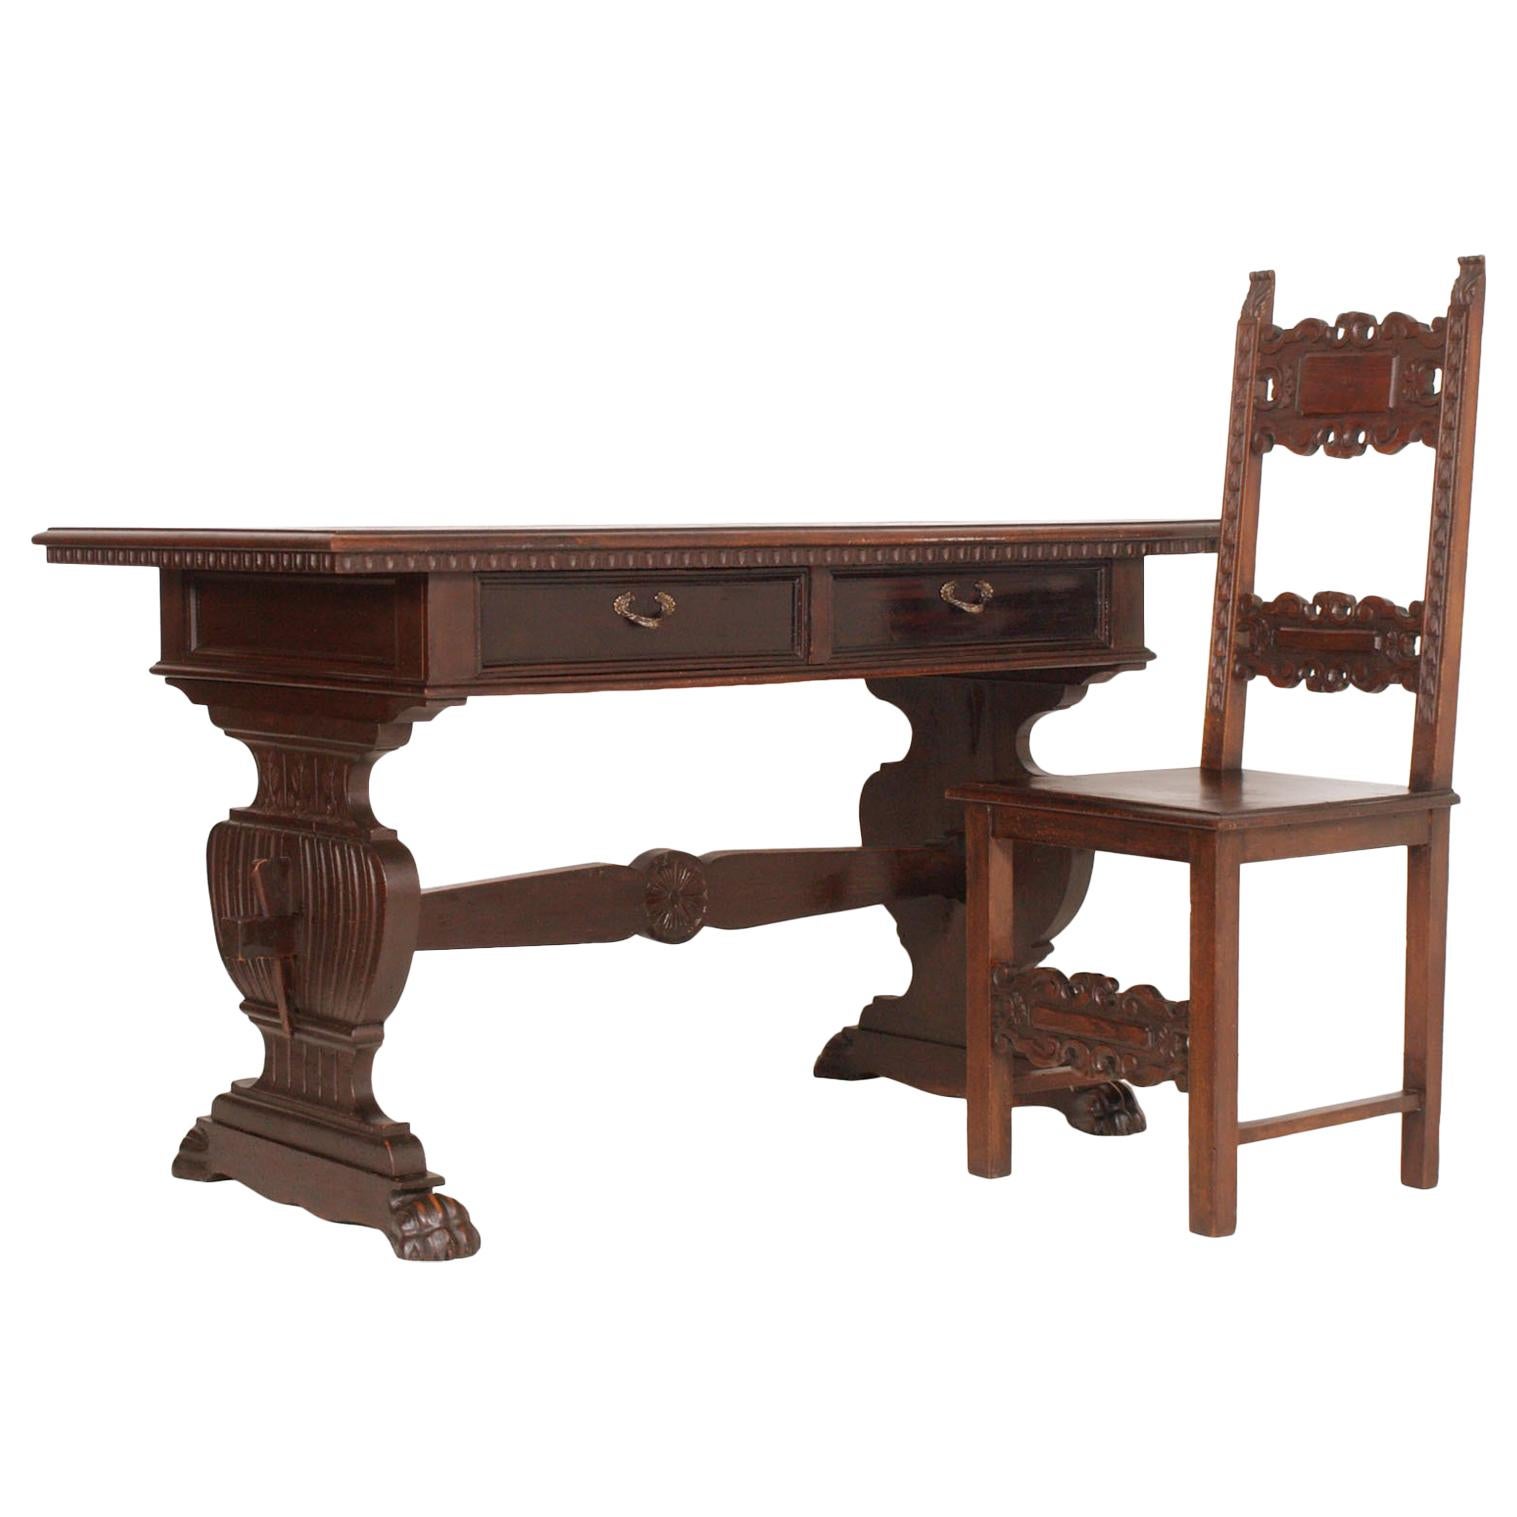 Table de bureau ancienne de la Renaissance toscanne du milieu du XIXe siècle en noyer massif sculpté à la main